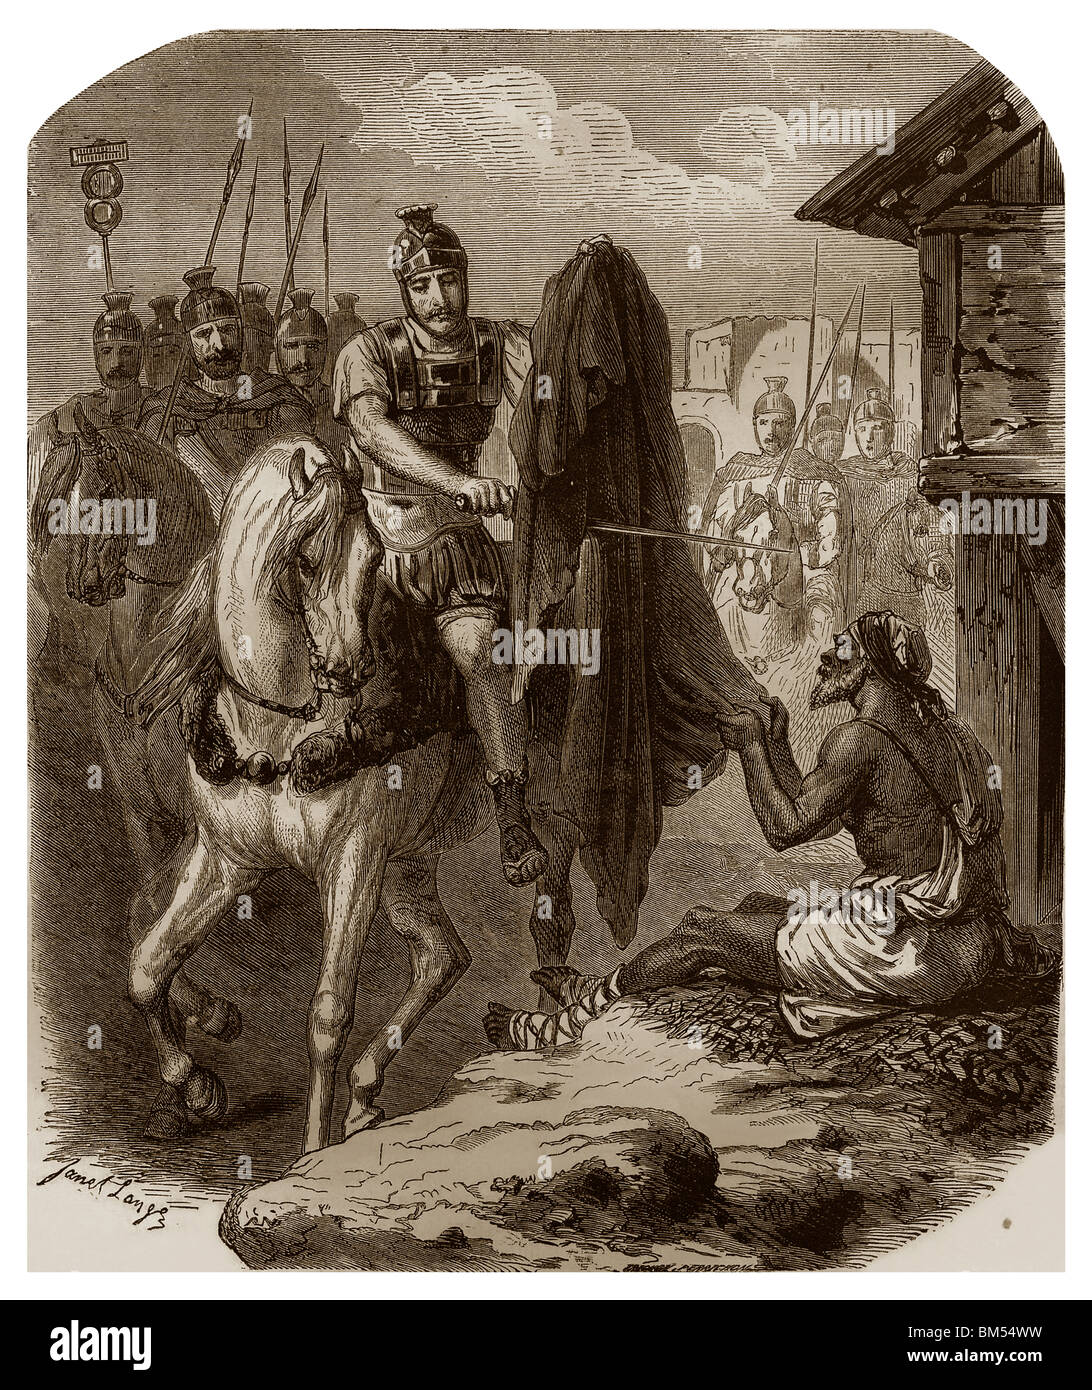 En 338, cerca de Amiens, durante el duro invierno, San Martín de Tours, obispo de Tours, cortar su abrigo y dio la mitad a un mendigo. Foto de stock